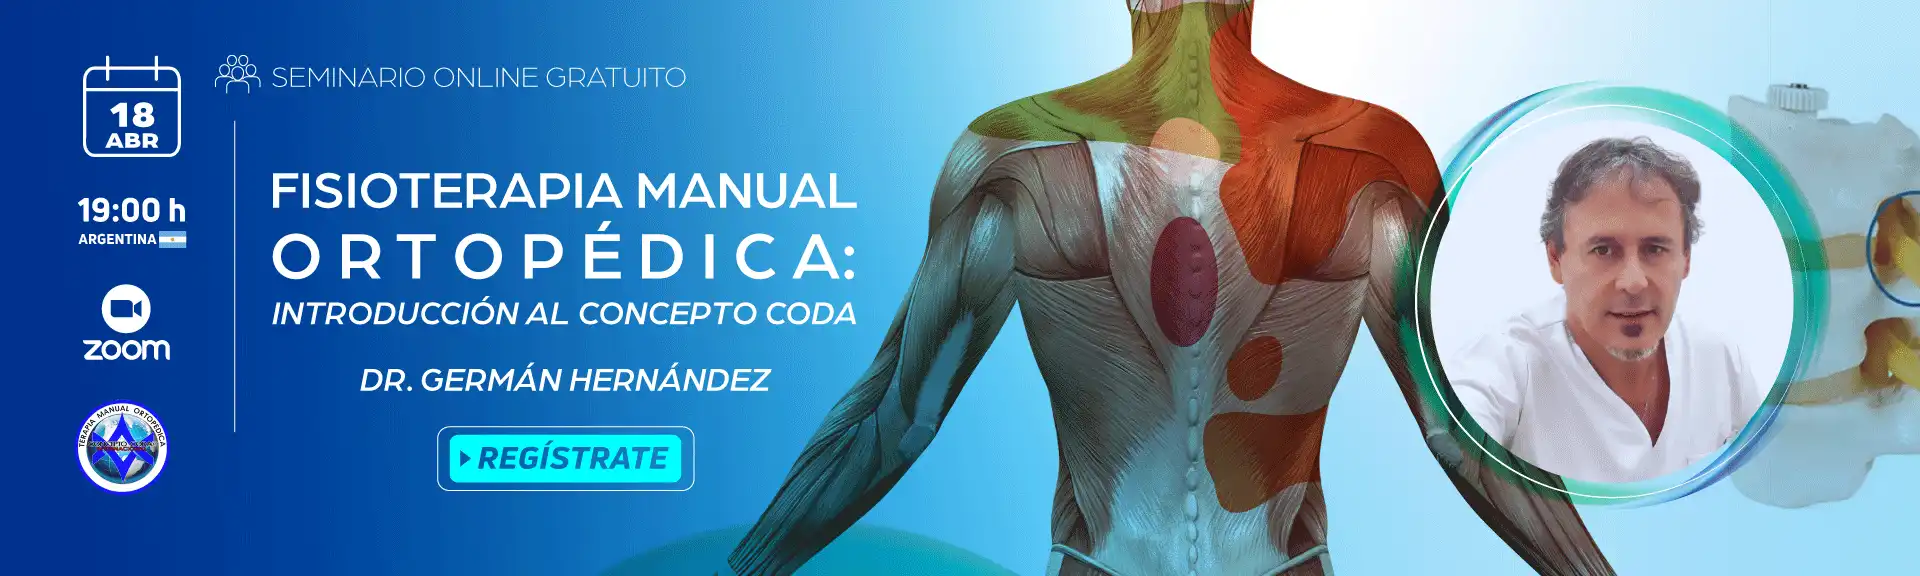 Seminario Online: "Fisioterapia manual ortopédica: Introducción al concepto Coda"